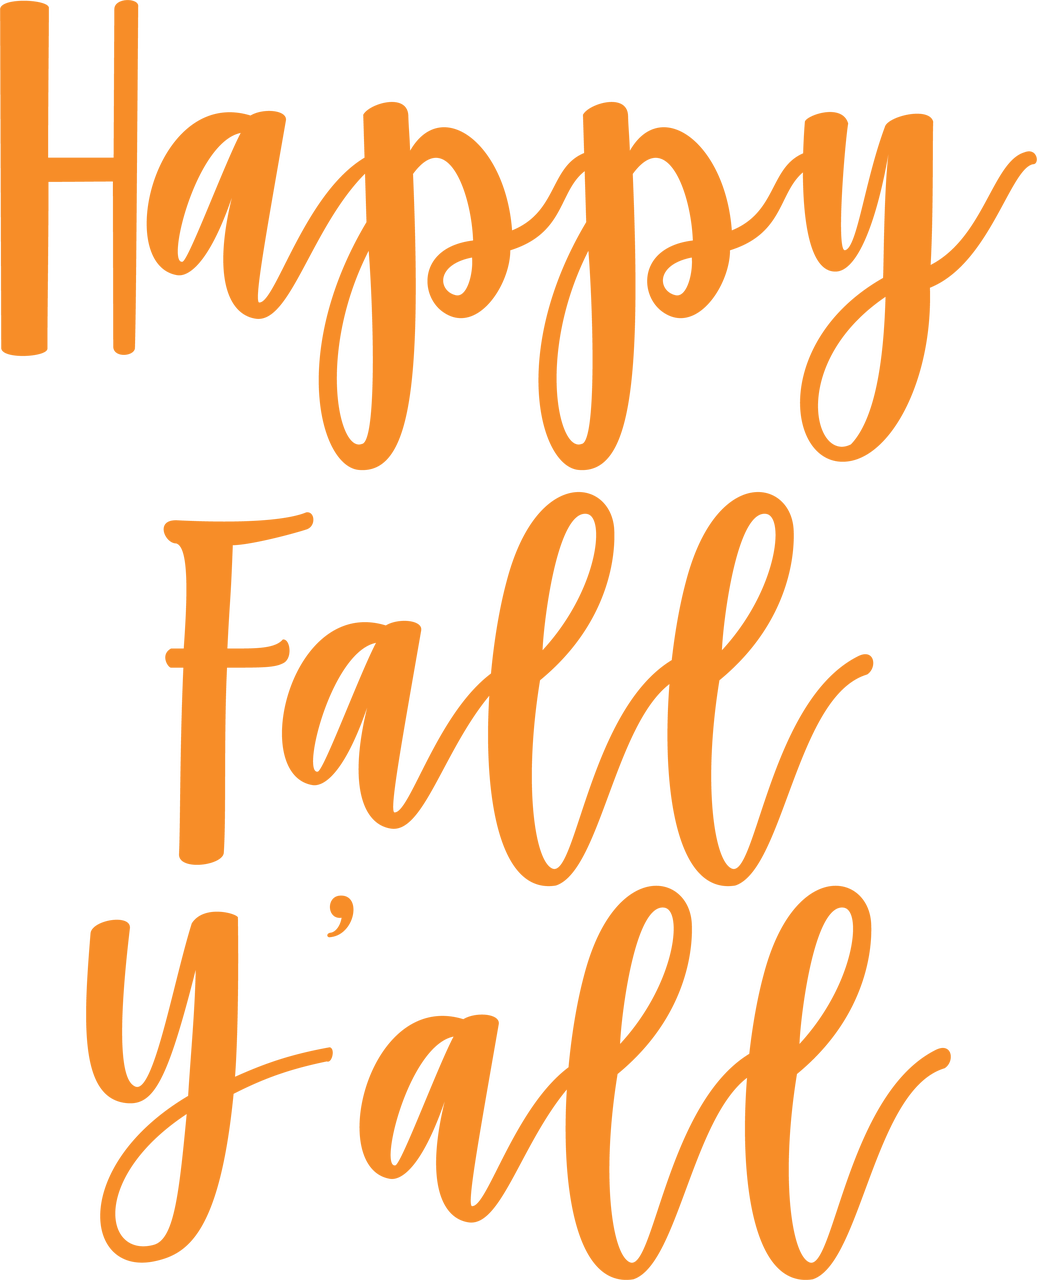 Happy Fall Y'all SVG Cut File